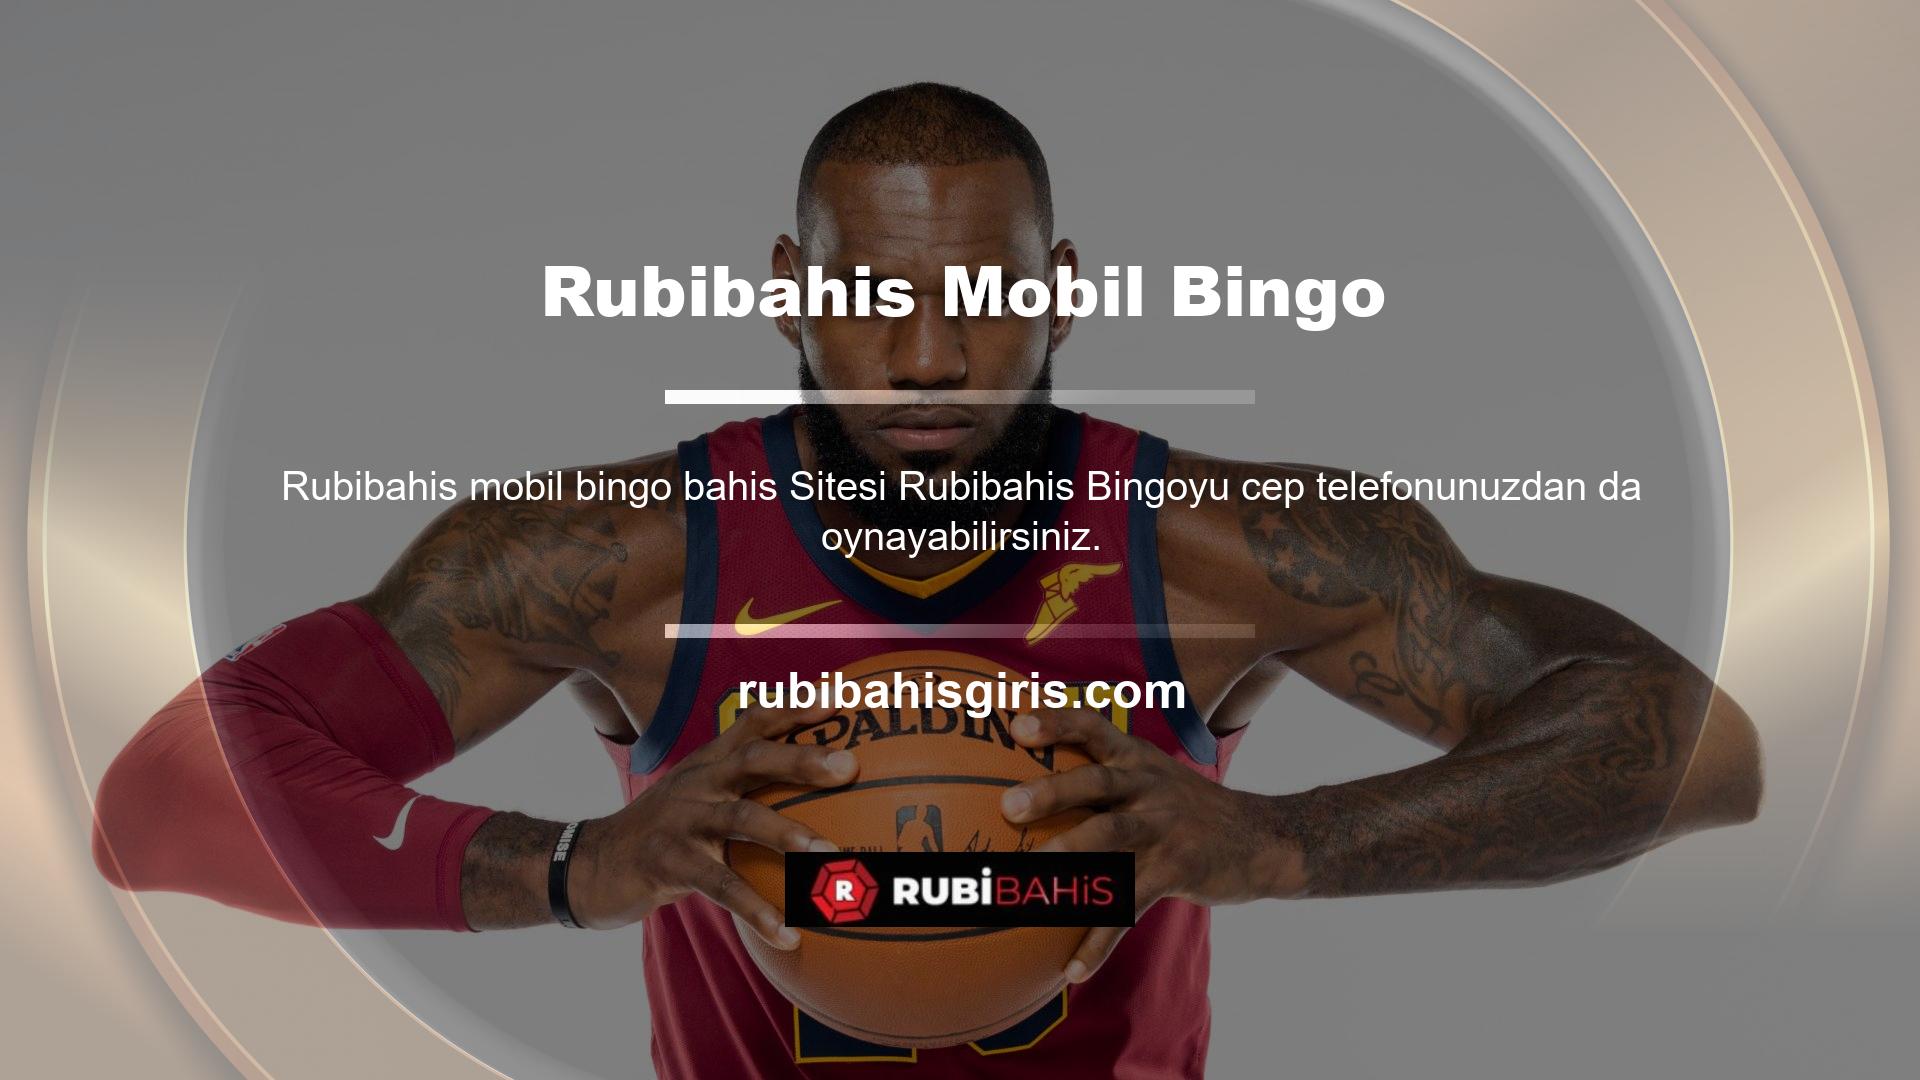 Üyeler Rubibahis mobil bingo bahis bilgisayarlarının yanı sıra kendi yatırımları ile de bingo oyunları oynamaya başlayabilirler